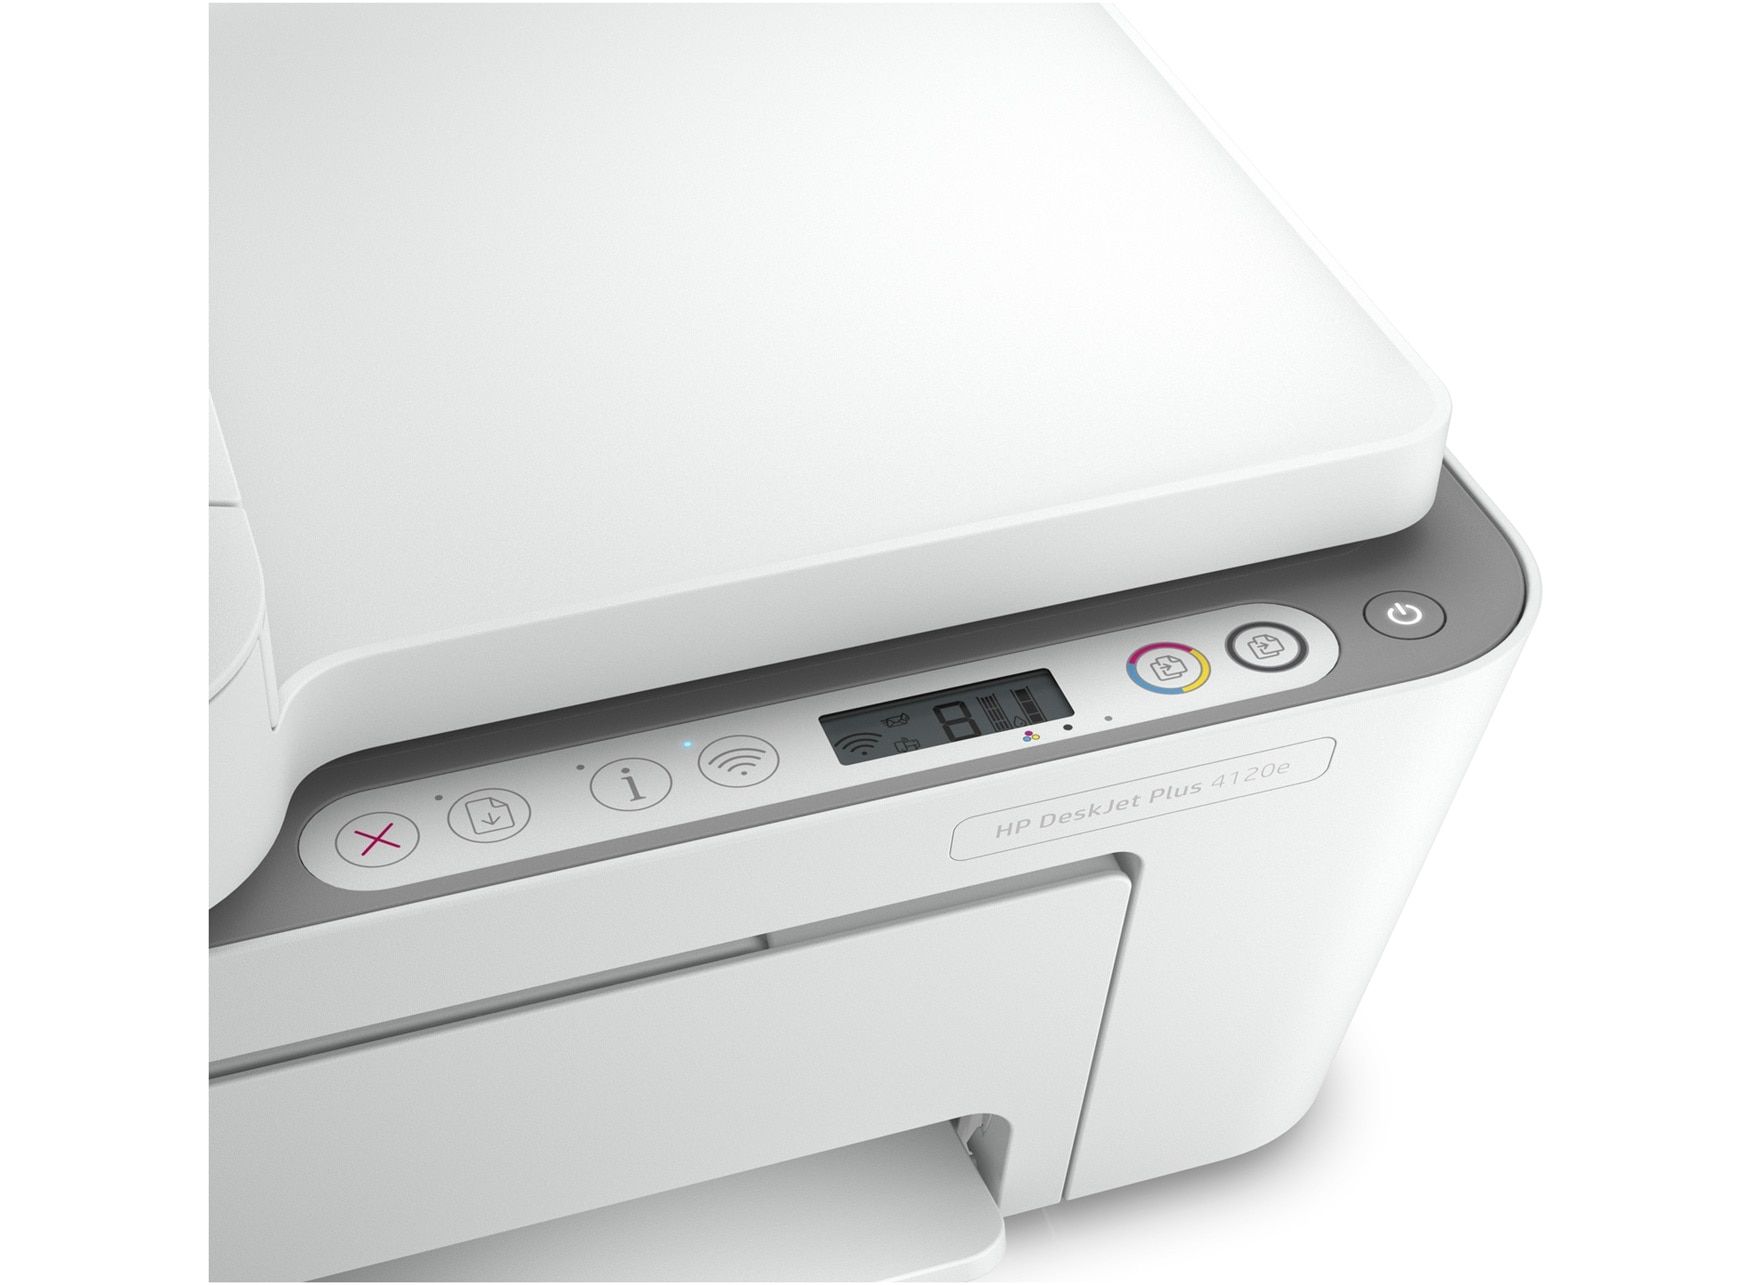 HP DeskJet 4120e A4 Color Wi-Fi USB 2.0 Print Copy Scan Fax Inkjet 20ppm_2